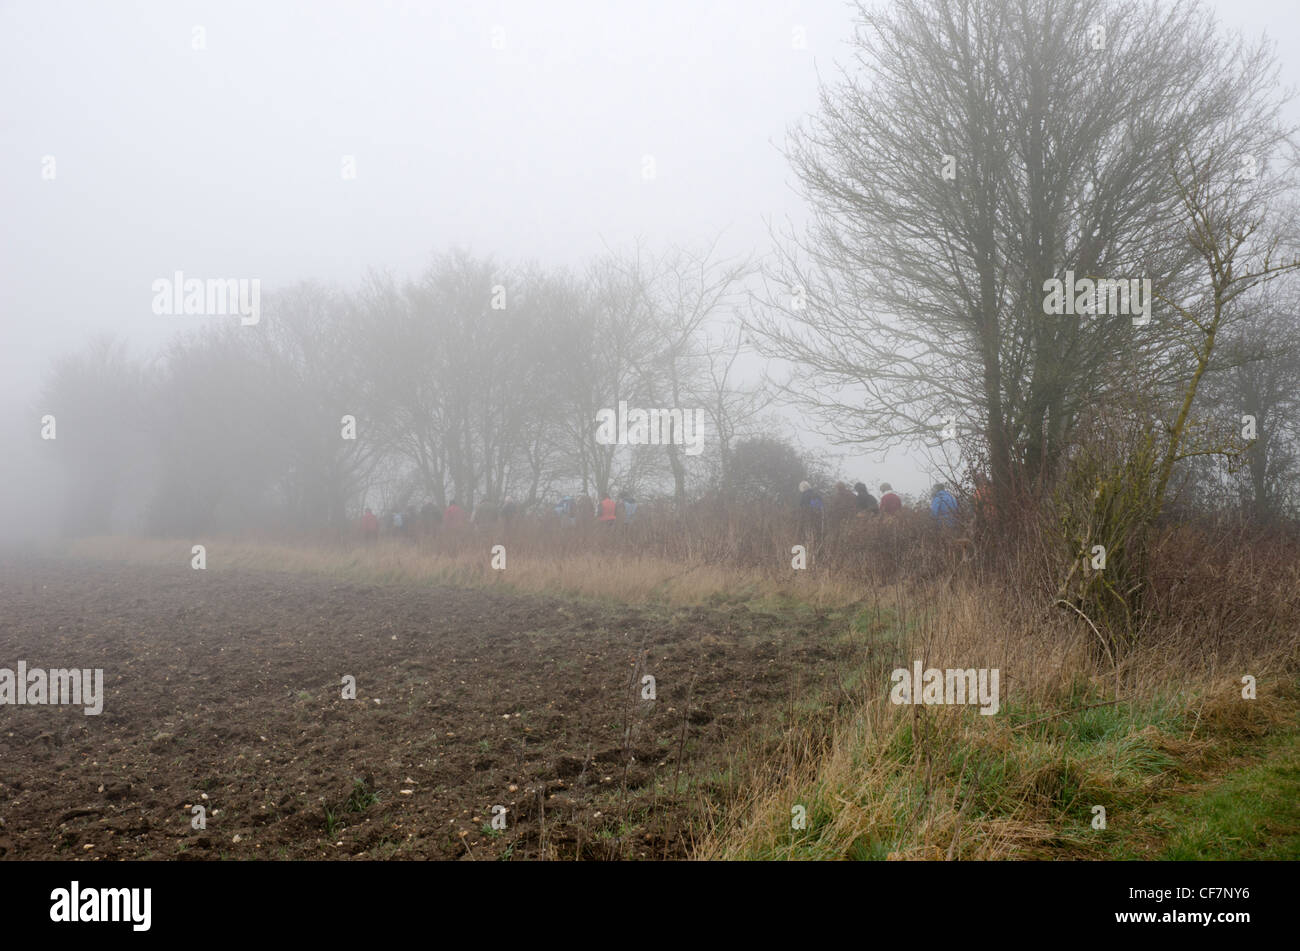 Group of ramblers walking in mist, beside a field Stock Photo